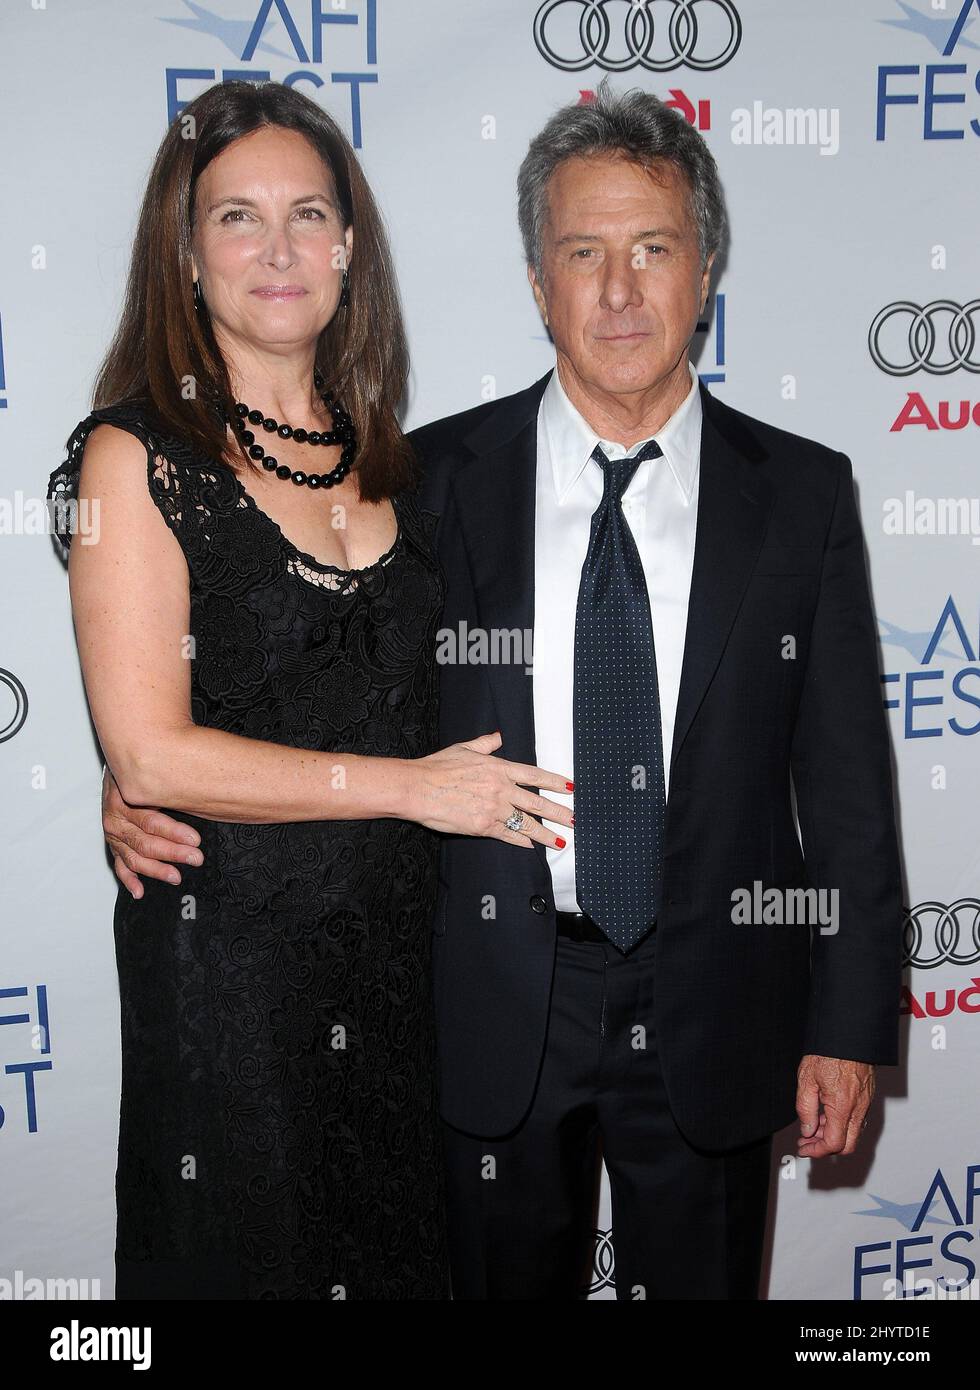 Dustin Hoffman e Lisa Gottsegen alla proiezione AFI Fest 2008 di 'Last Chance Harvey' presso i cinema ARCLIGHT. Foto Stock